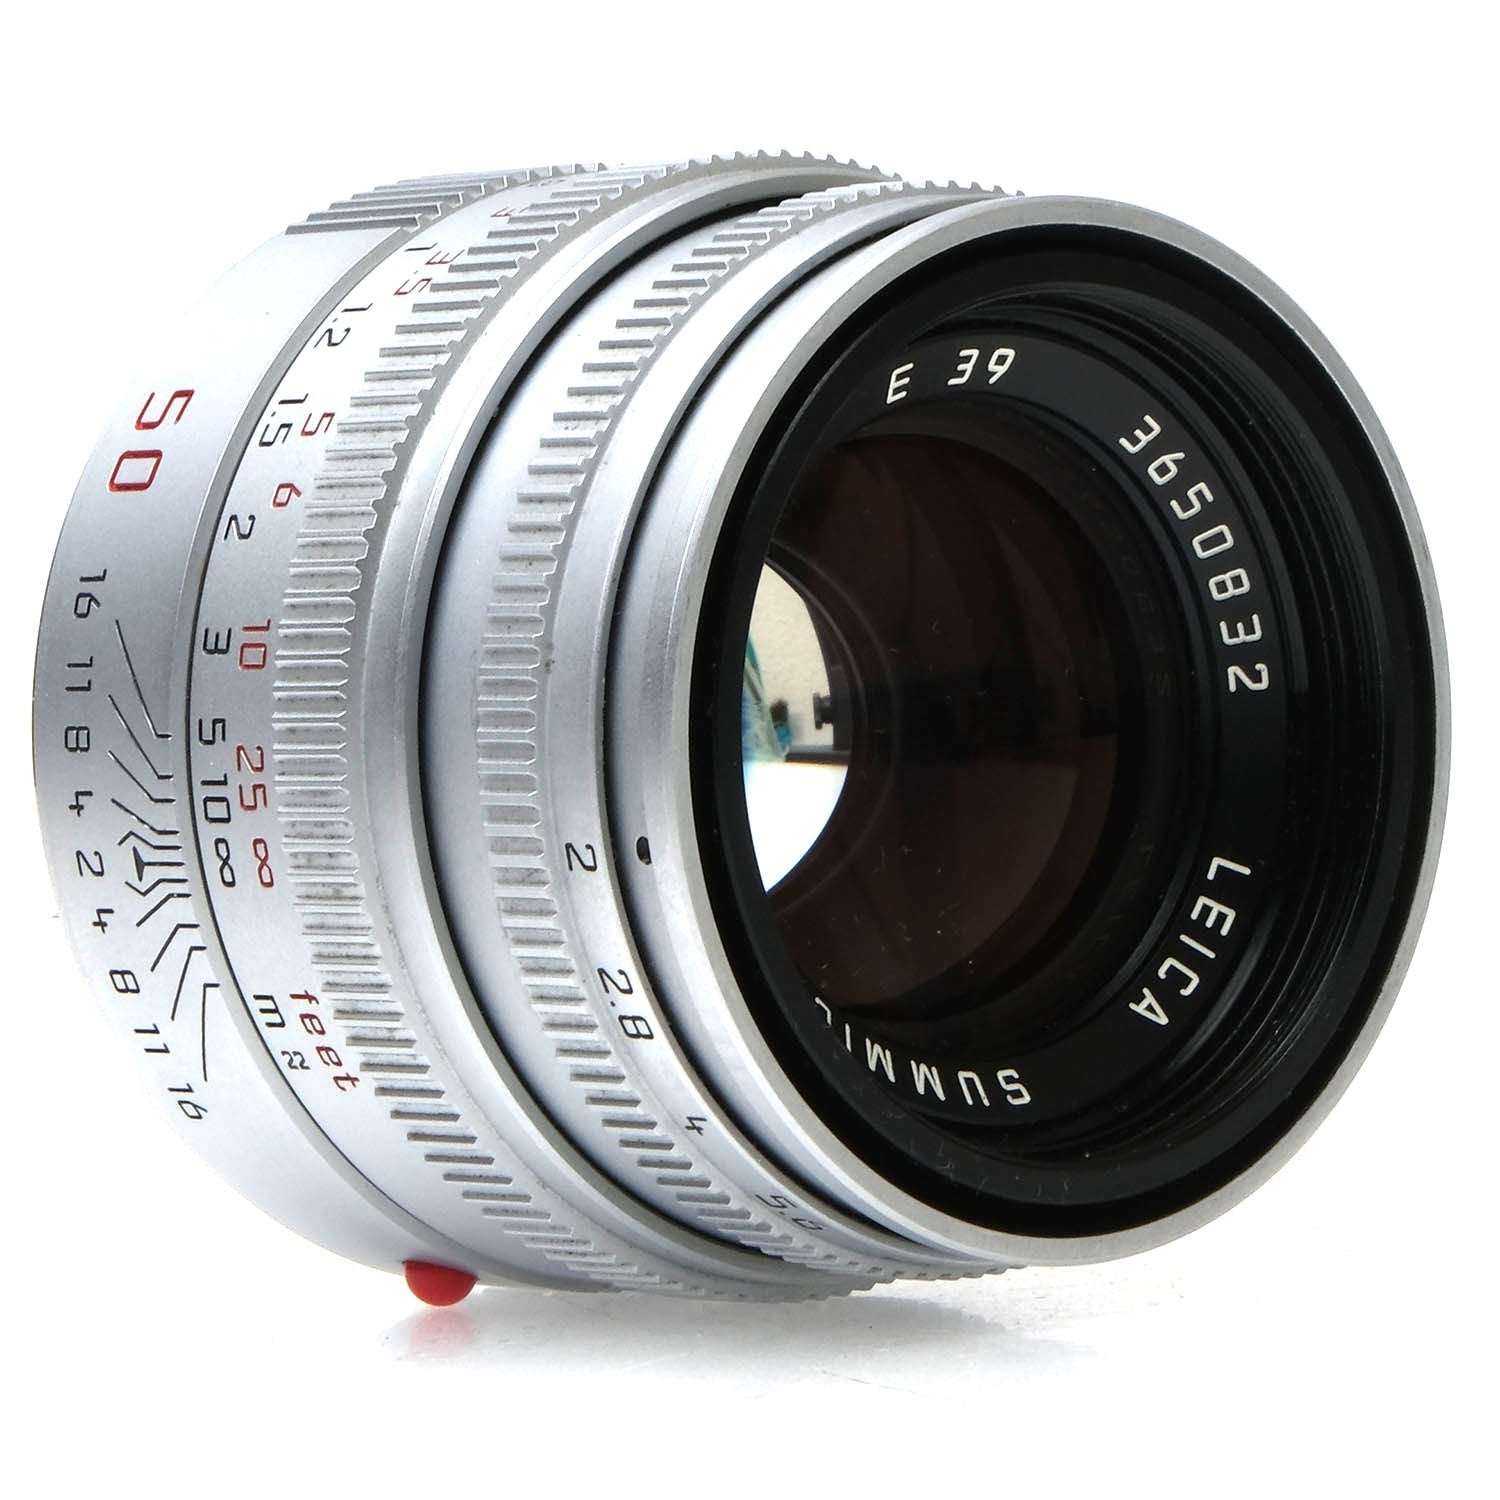 Leica 50mm F2.0 Summicron-M V5, Silver, Case 3650832